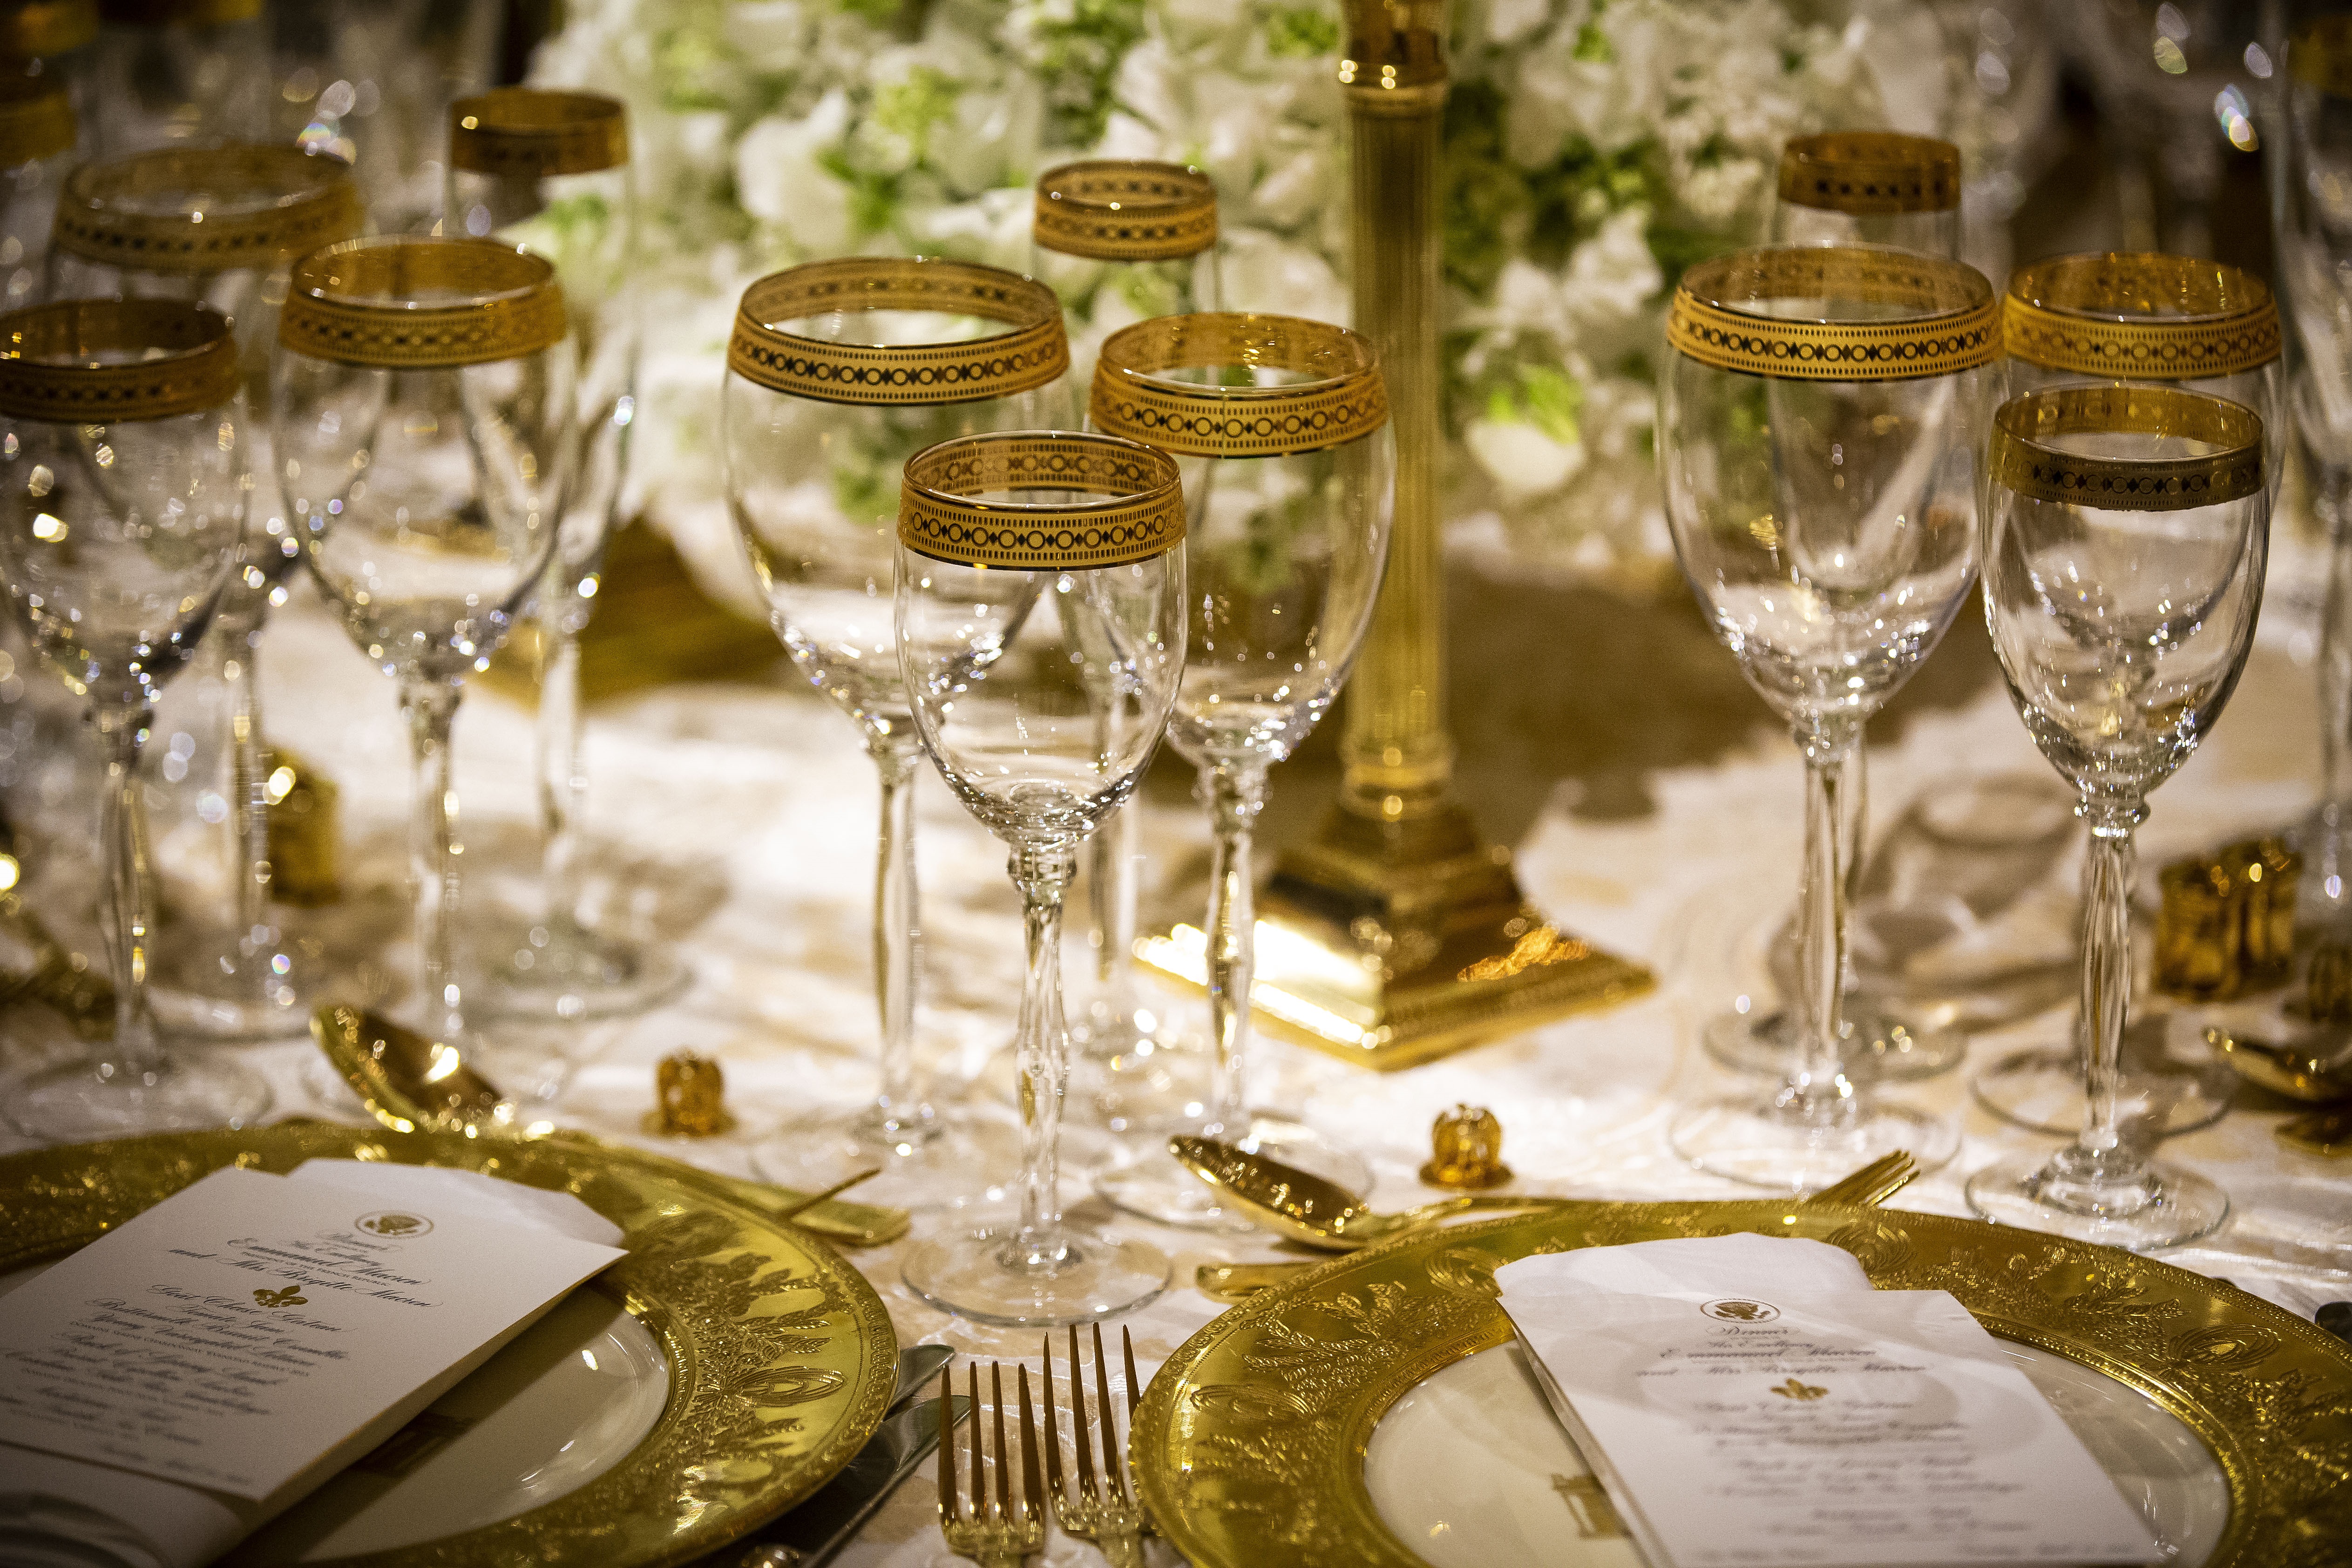 За кратко репортери бяха допуснати до залата, в която се проведе вечерята. Те бяха посрещнати от изящно подредени маси – златни чаши за вино, златни свещници, златни столове, ситуирани около масите,украсени с изящни цветя в бяло и зелено